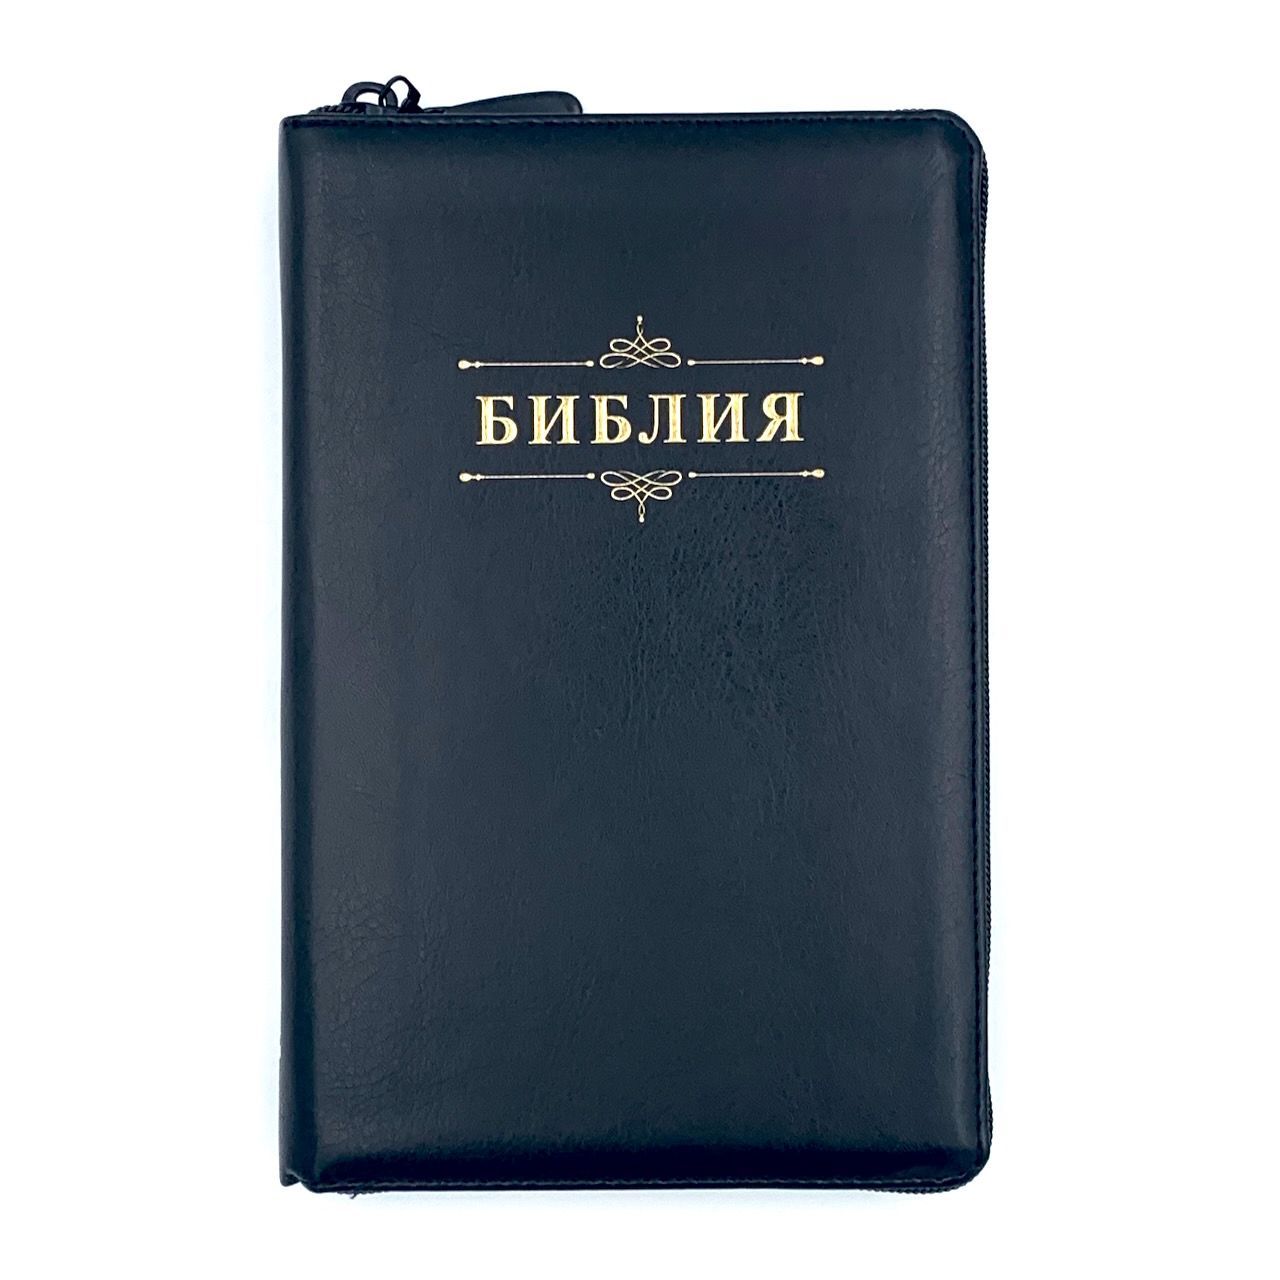 Библия 055zti код 23055-13 надпись "Библия", переплет из искусственной кожи на молнии с индексами, цвет черный, средний формат, 143*220 мм